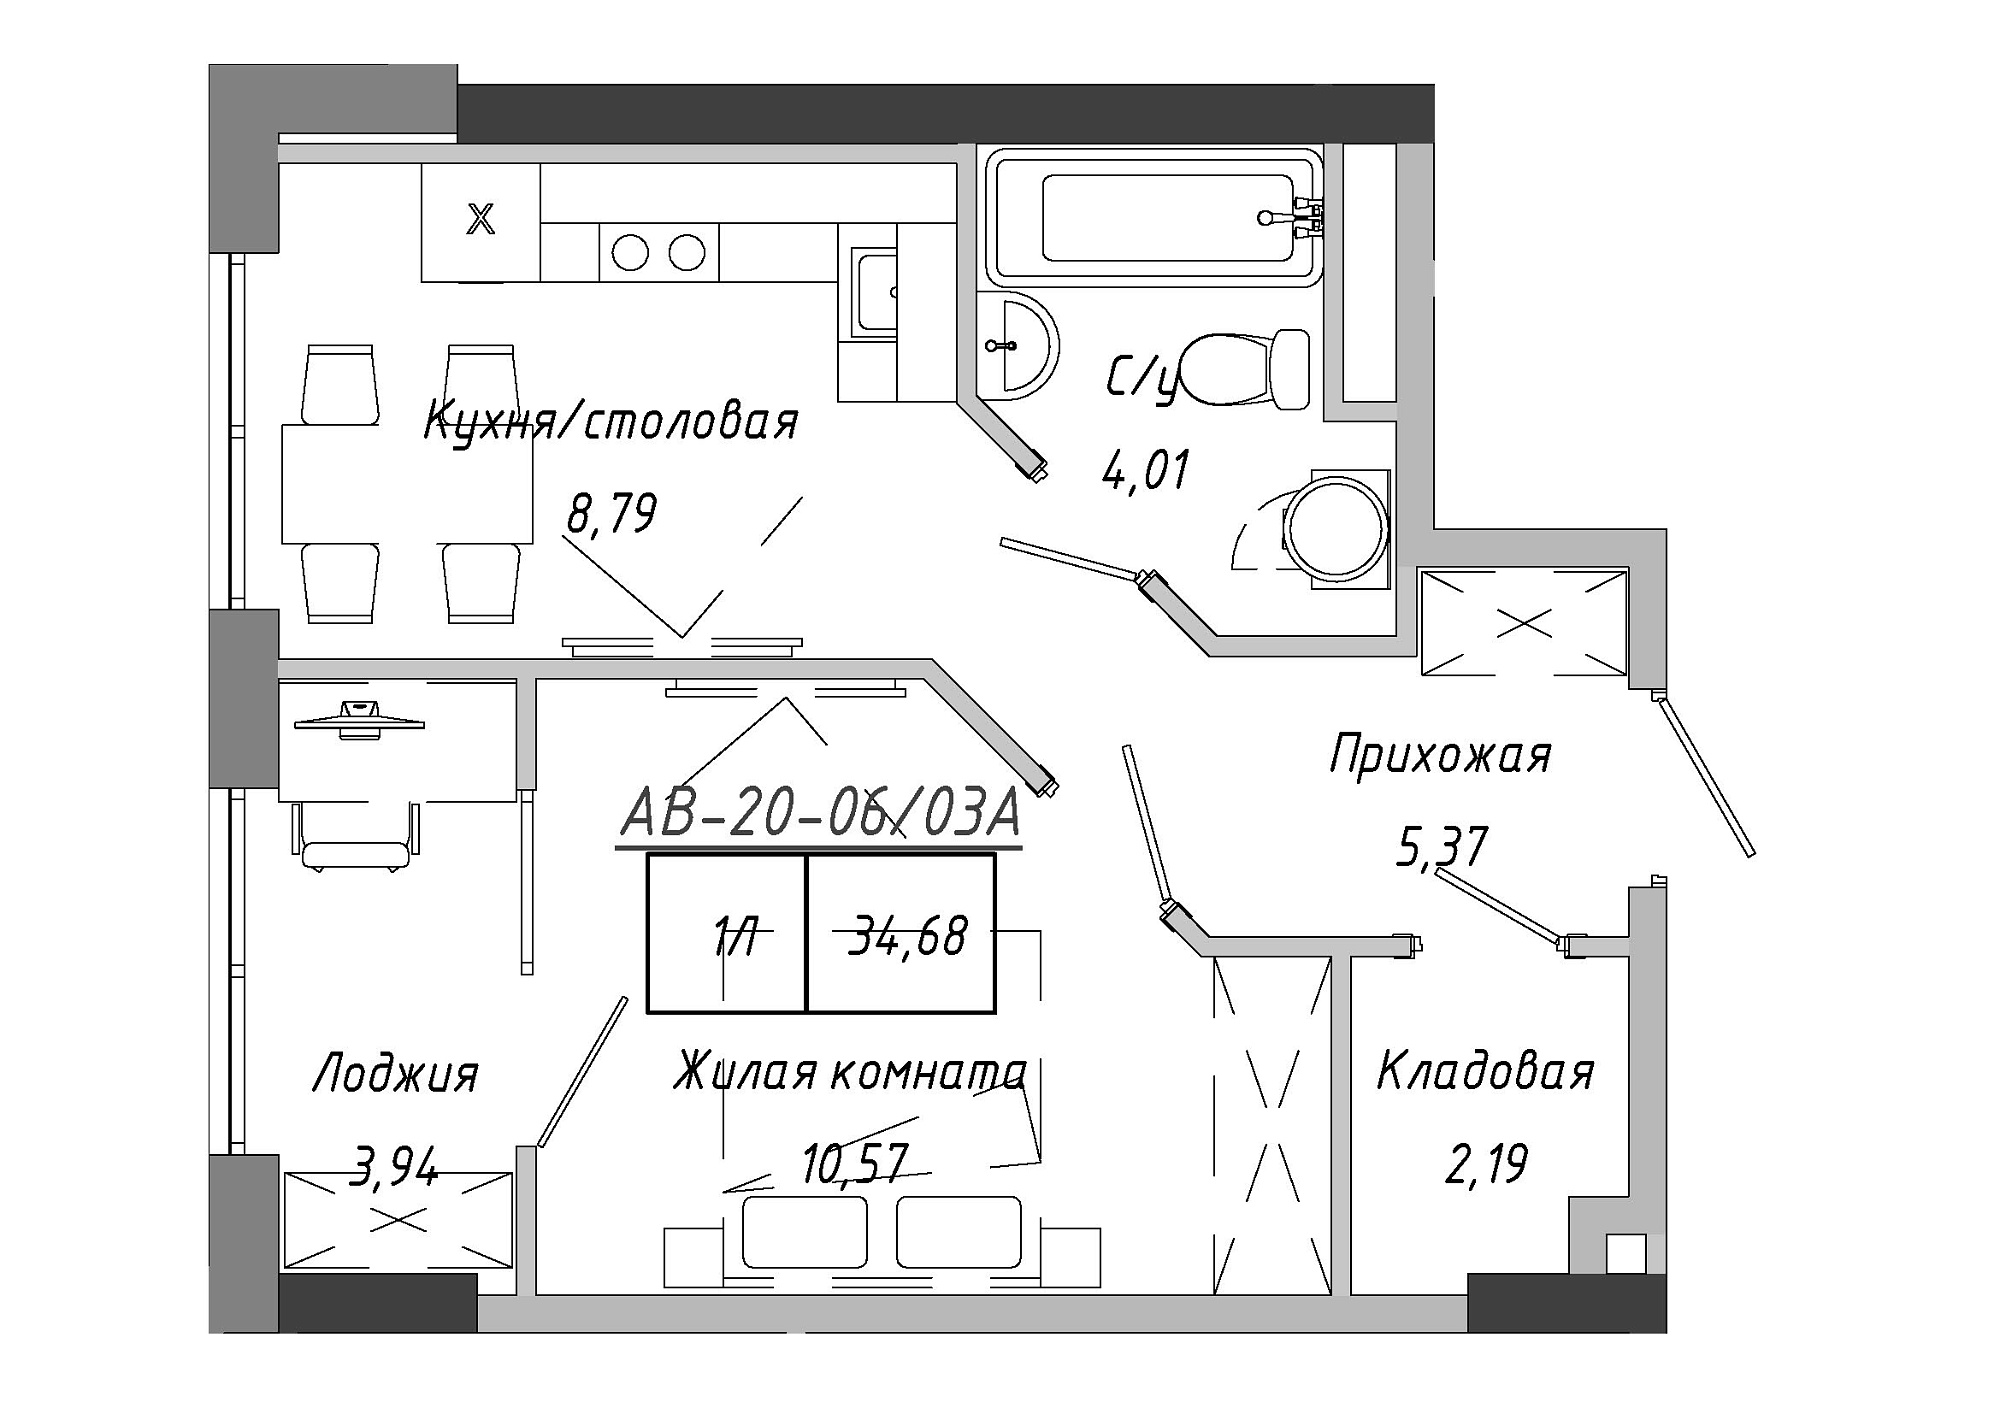 Планировка 1-к квартира площей 35.26м2, AB-20-06/0003а.